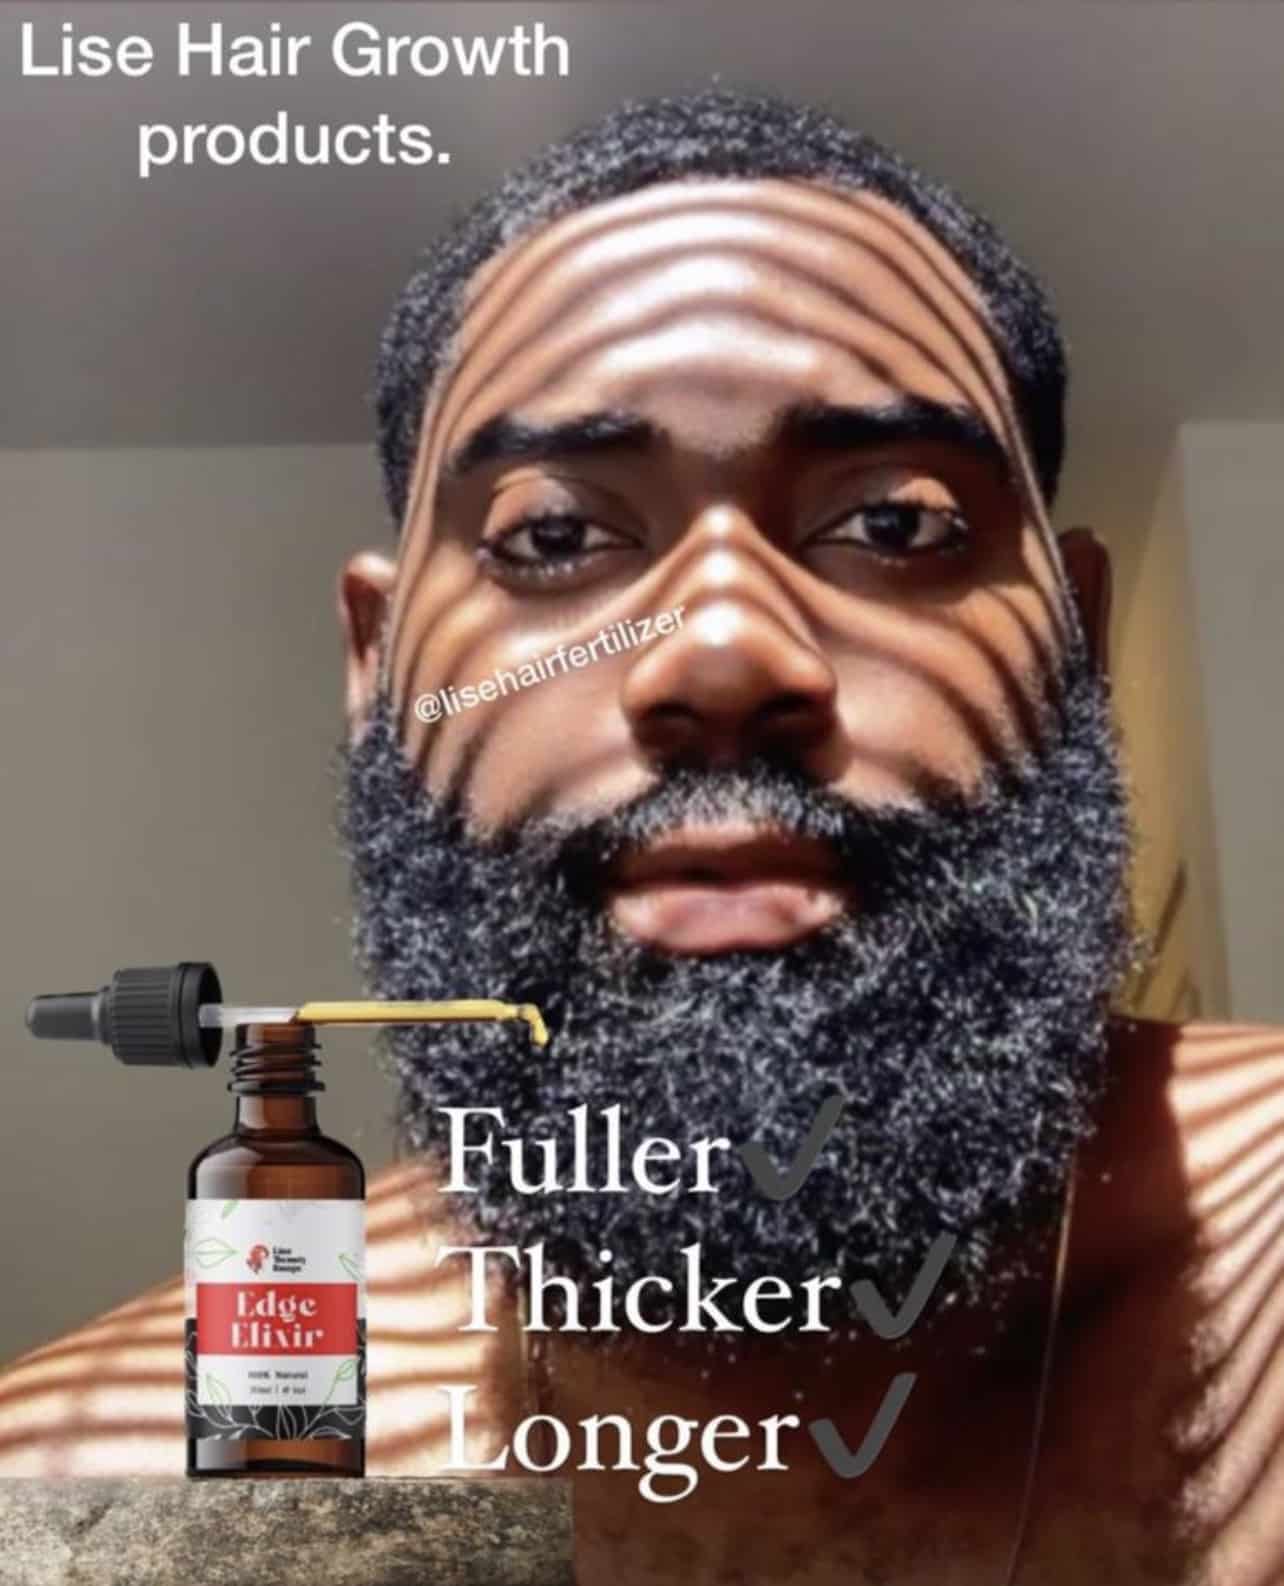 Beard oil / Edge Elixir